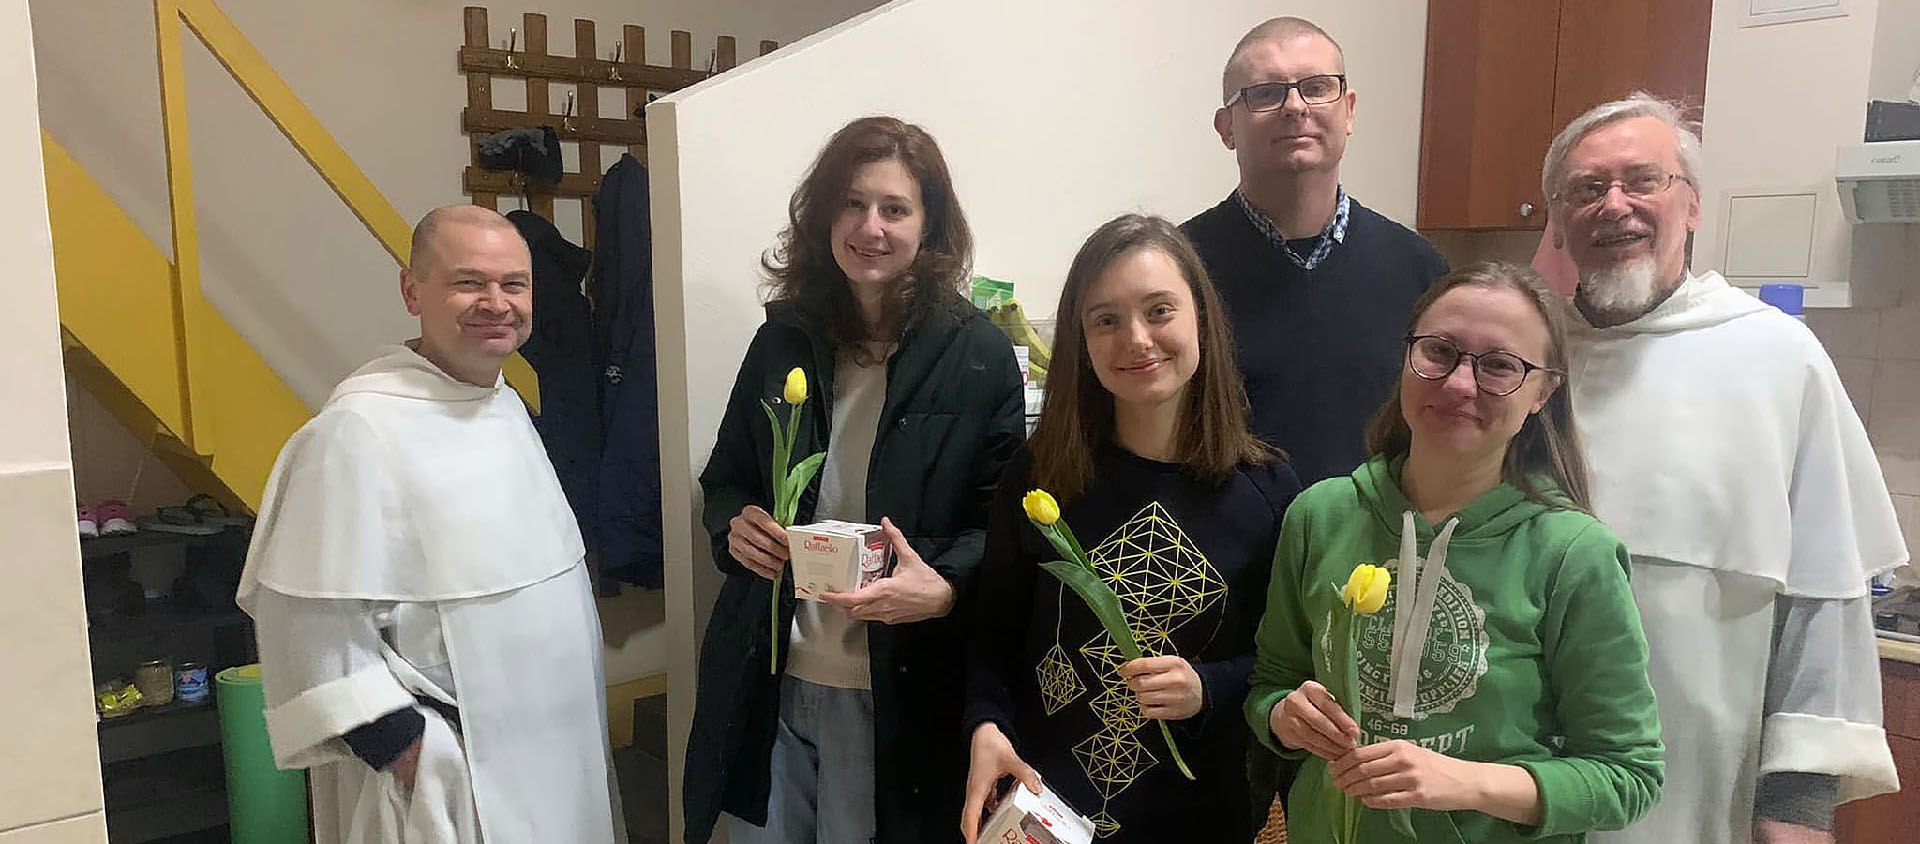 Le frère Jaroslaw Krawiec debout derrière au centre, est allé avec le frère Tomasz acheter des fleurs pour les femmes vivant et travaillant au prieuré à l'occasion de la Journée de la femme, le 8 mars | © Dominicains de Kiev 